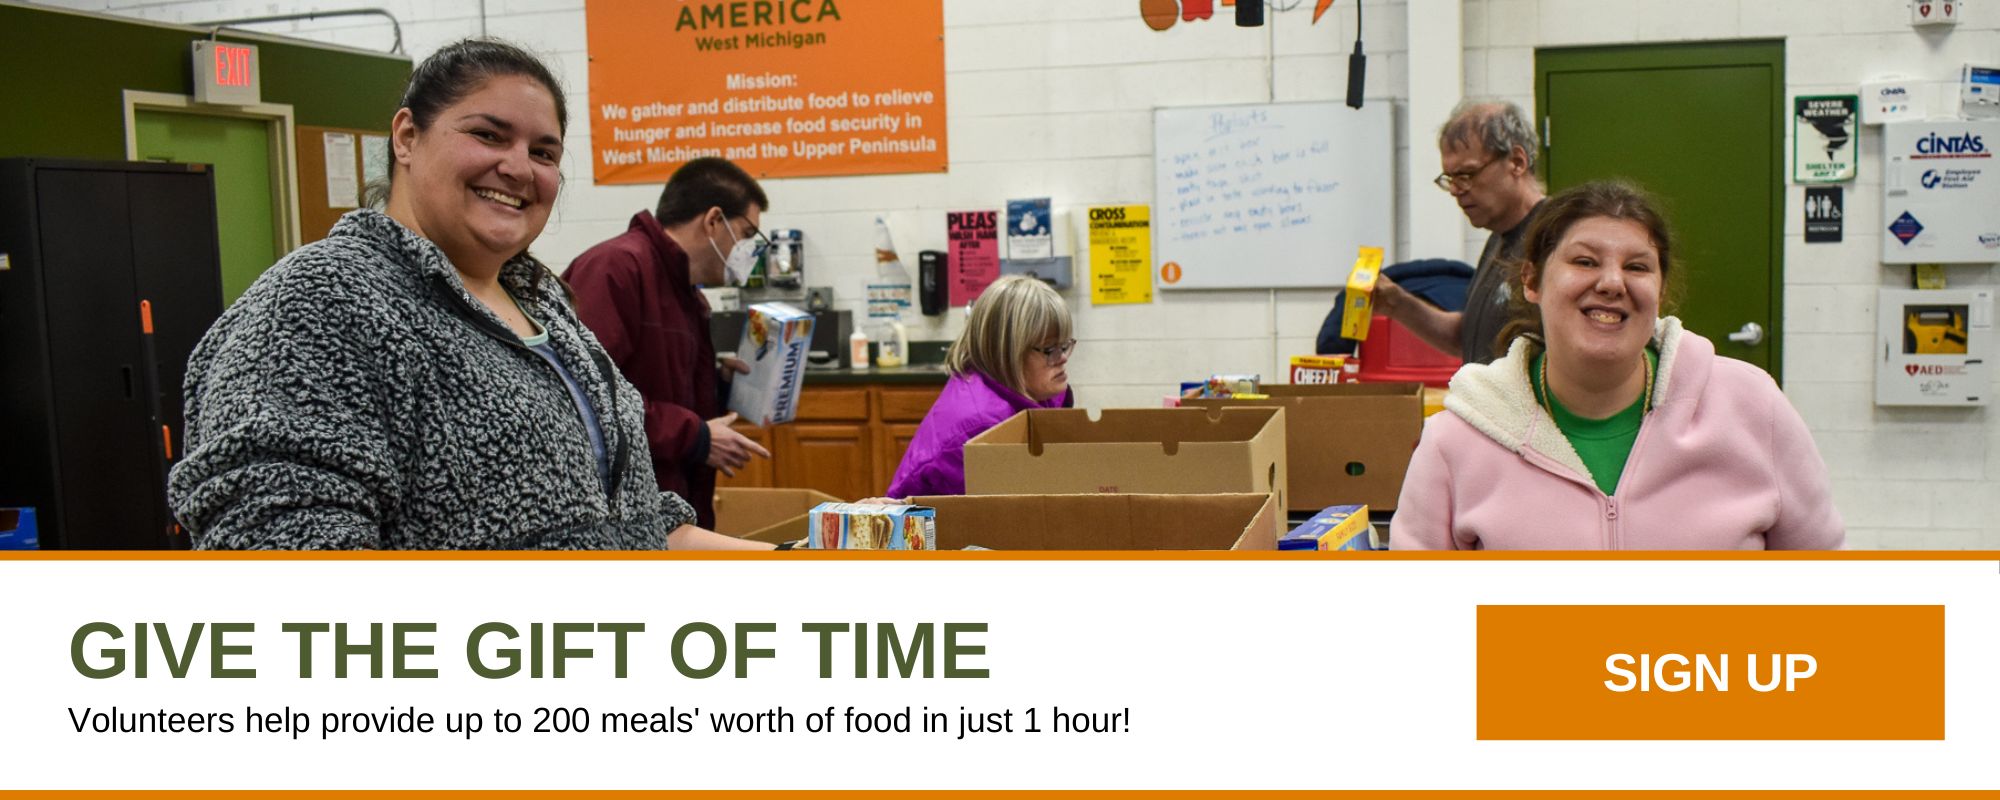 امنح هدية الوقت. يساعد المتطوعون في تقديم ما يصل إلى 200 وجبة طعام في ساعة واحدة فقط! اشتراك